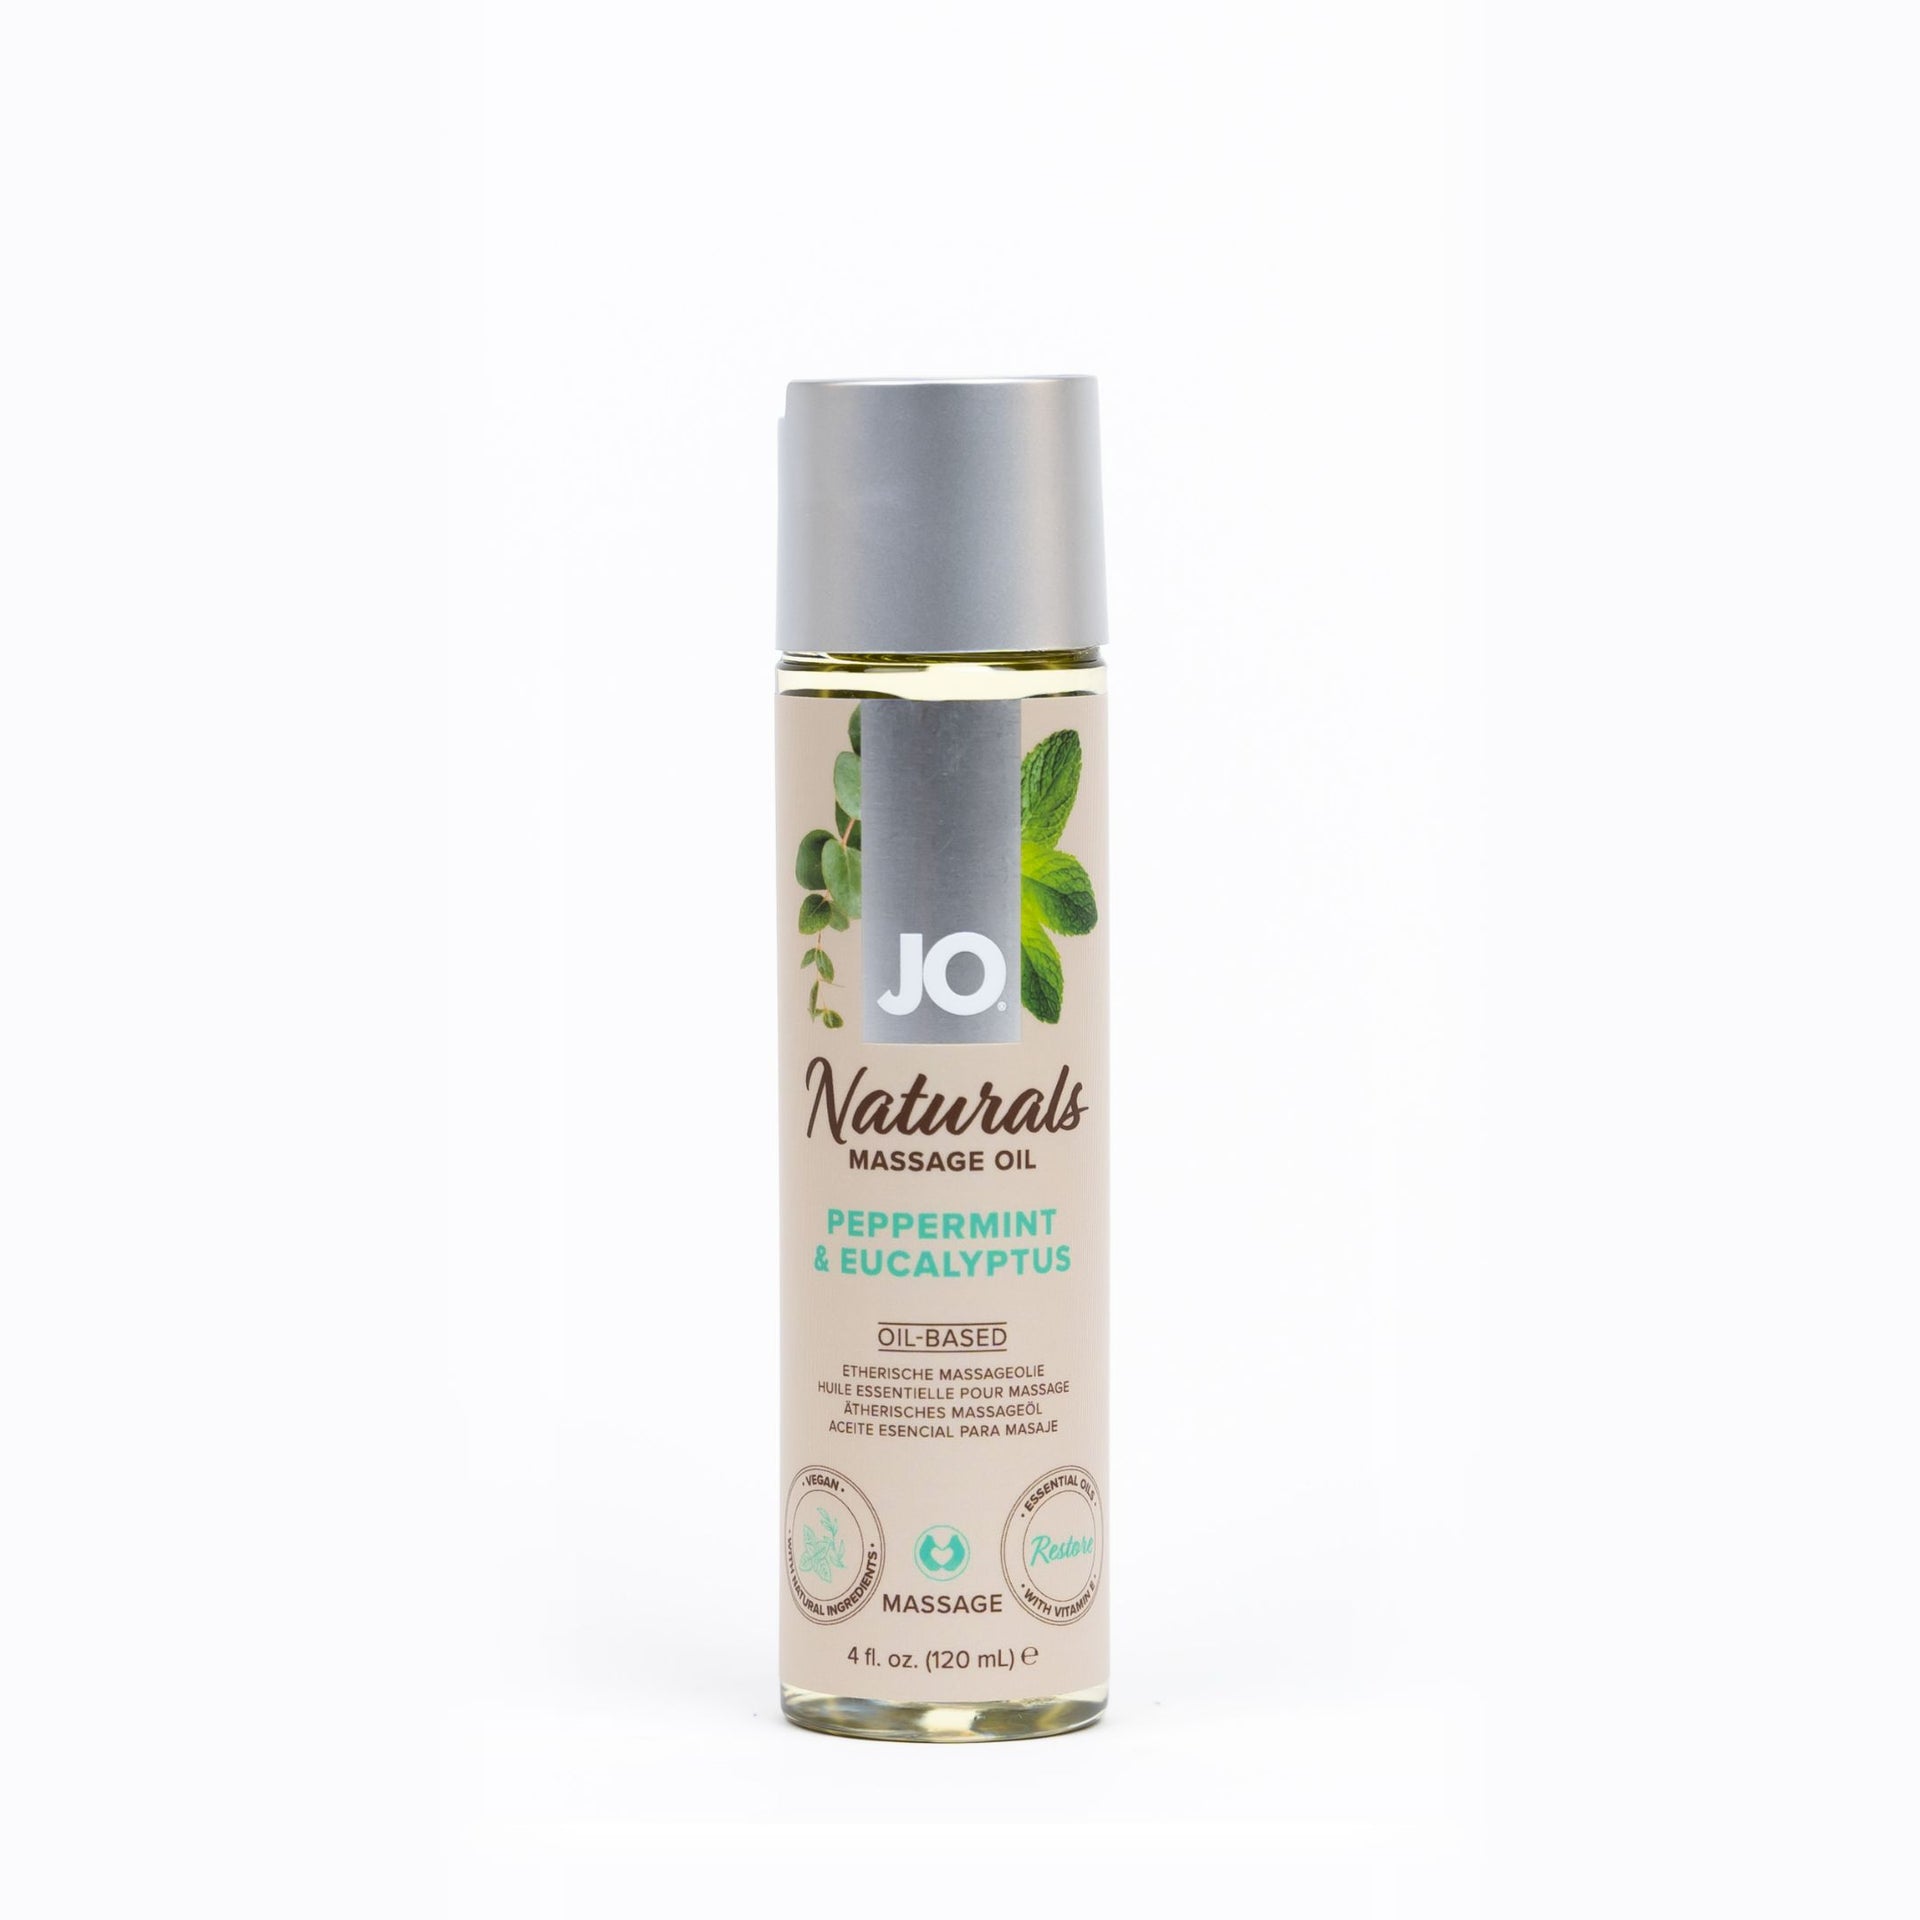 Naturals Massage Oil Peppermint & Eucalyptus – JO